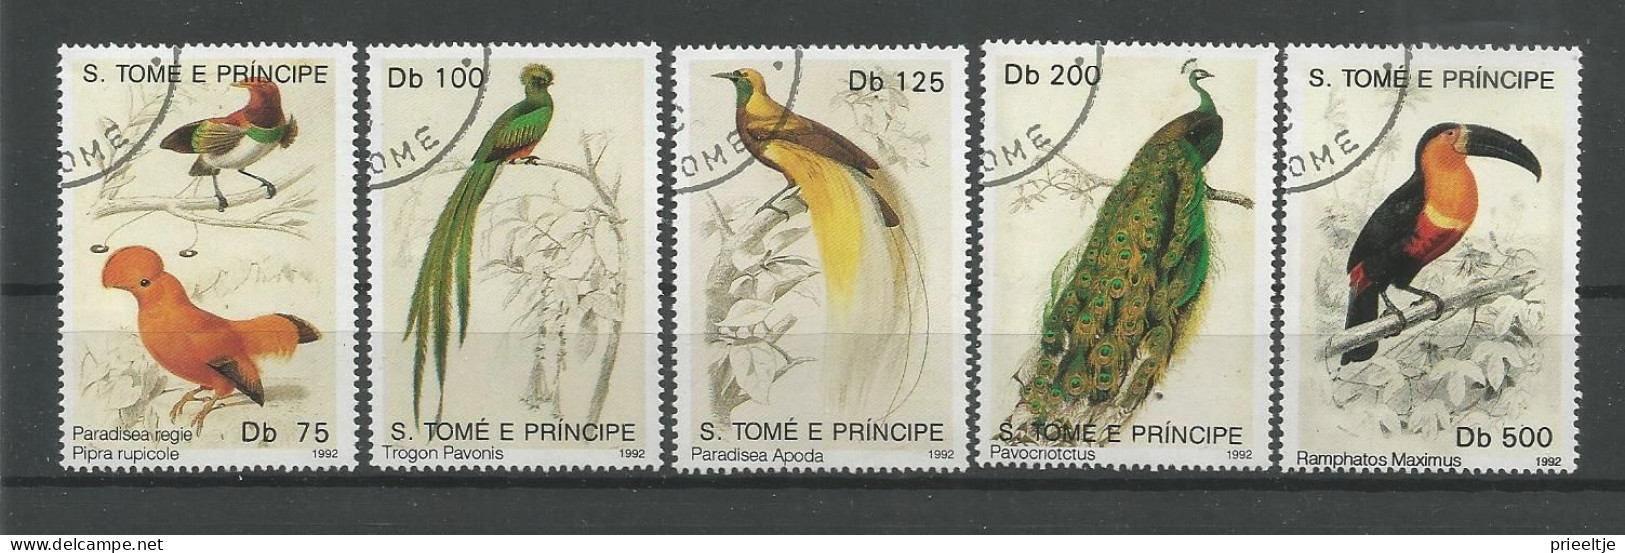 St Tome E Principe 1992 Birds  Y.T. 1099/1103 (0) - Sao Tome Et Principe